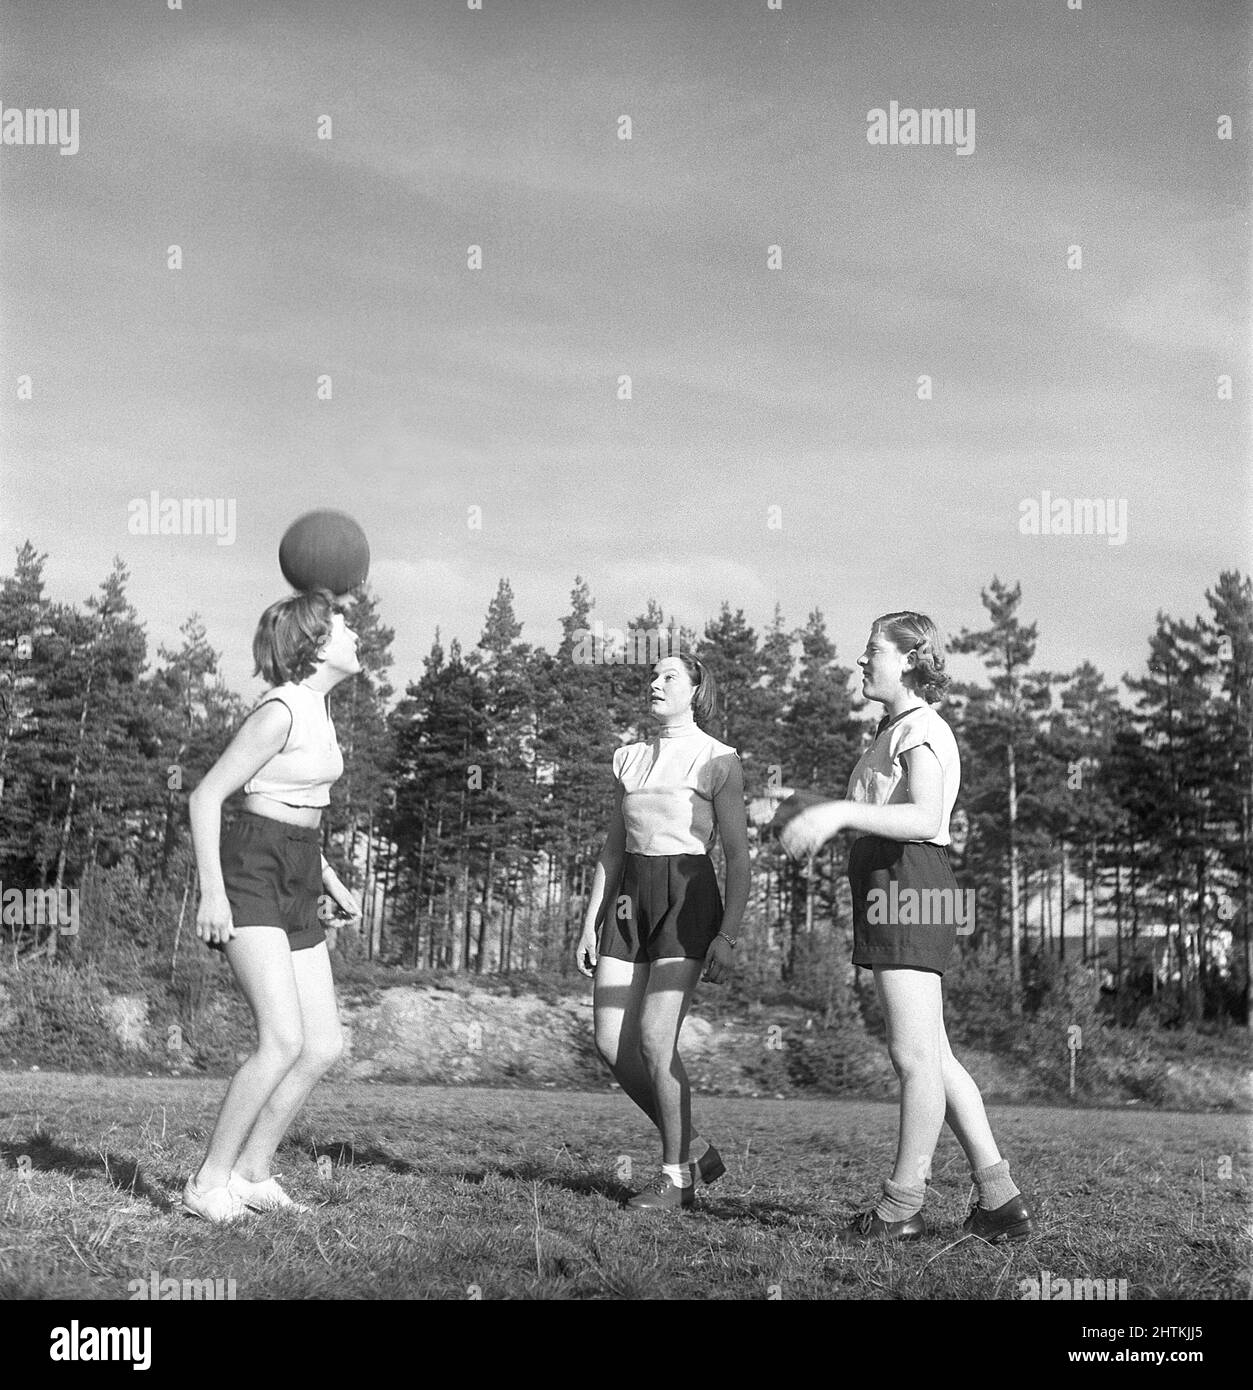 Nel 1950s. Una squadra di calcio femminile durante la pratica. Tre giocatori stanno dirigendo la palla tra loro. Svezia 1951 Kristoffersson BE37-11 Foto Stock